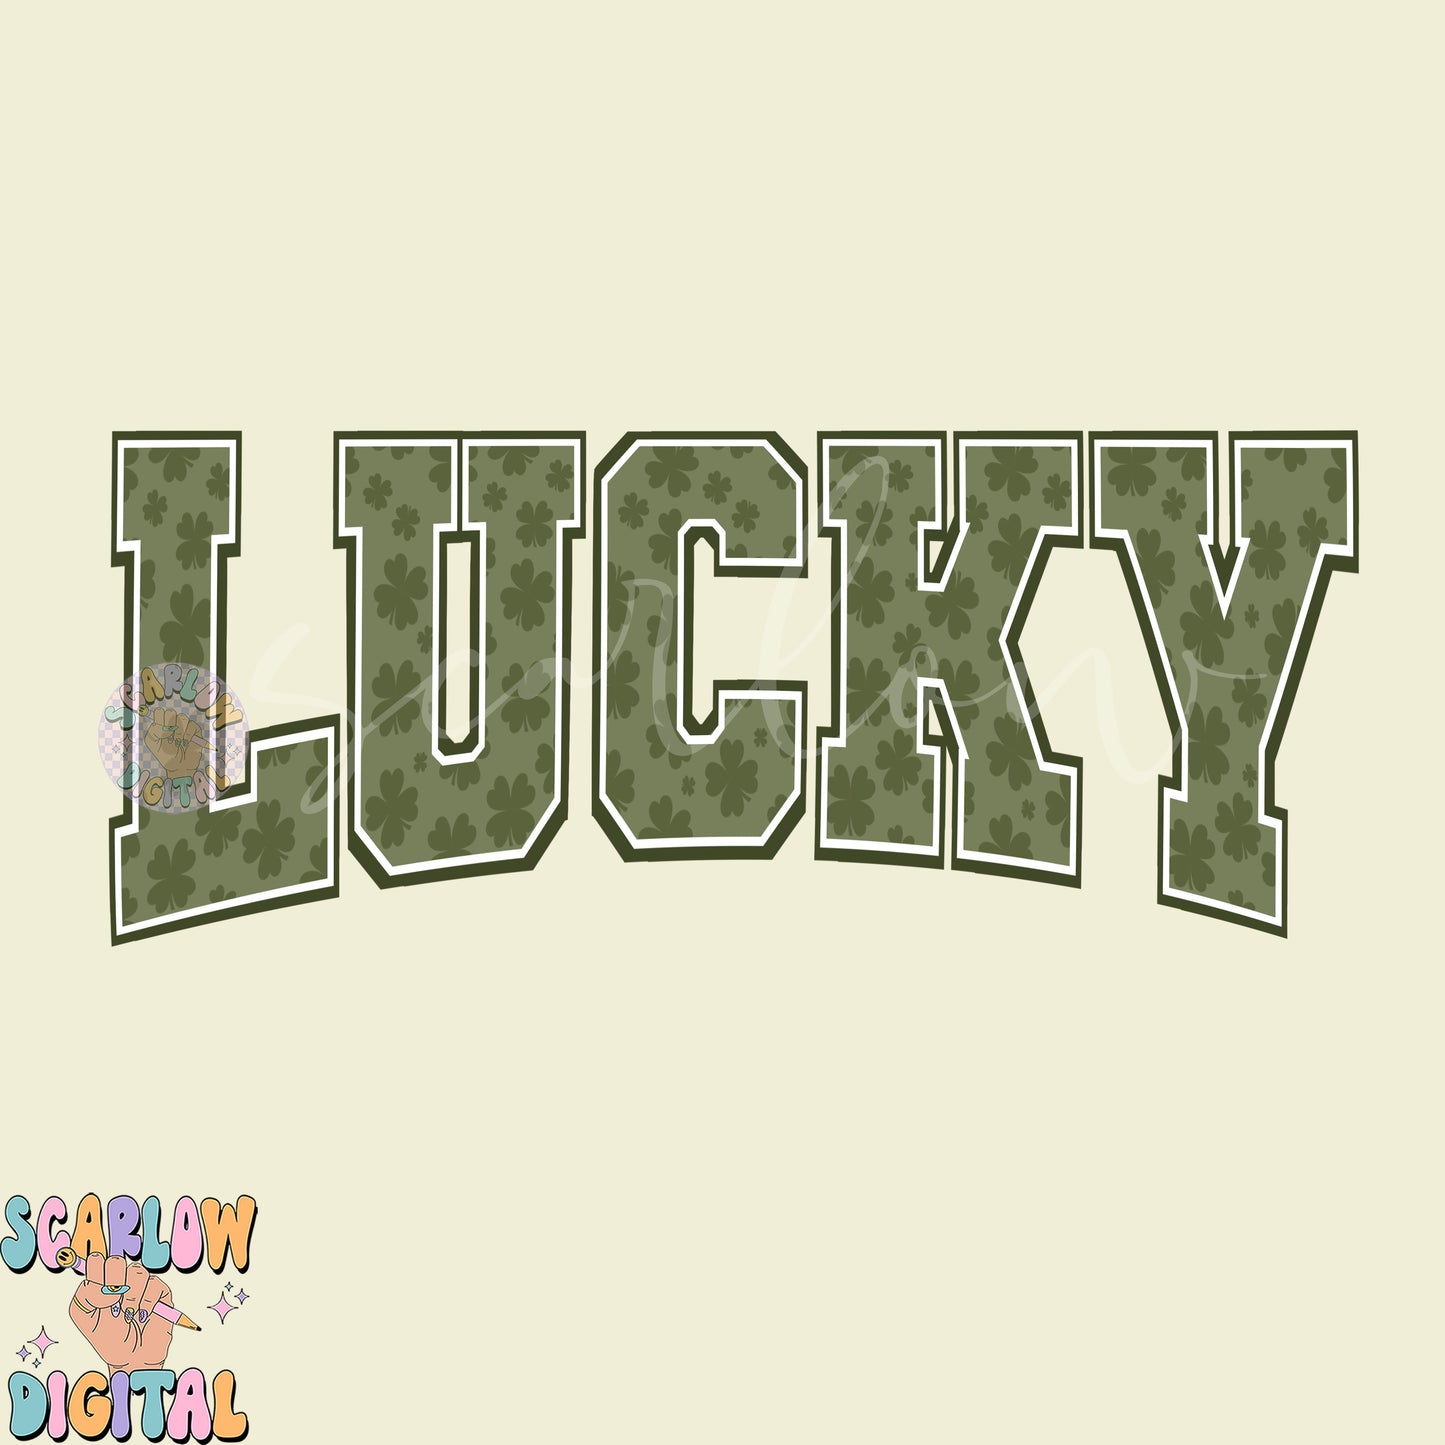 Lucky PNG-St Patrick's Day Sublimation Digital Design Download-varsity png, vintage png, grunge png, shamrock png, irish png, simple png